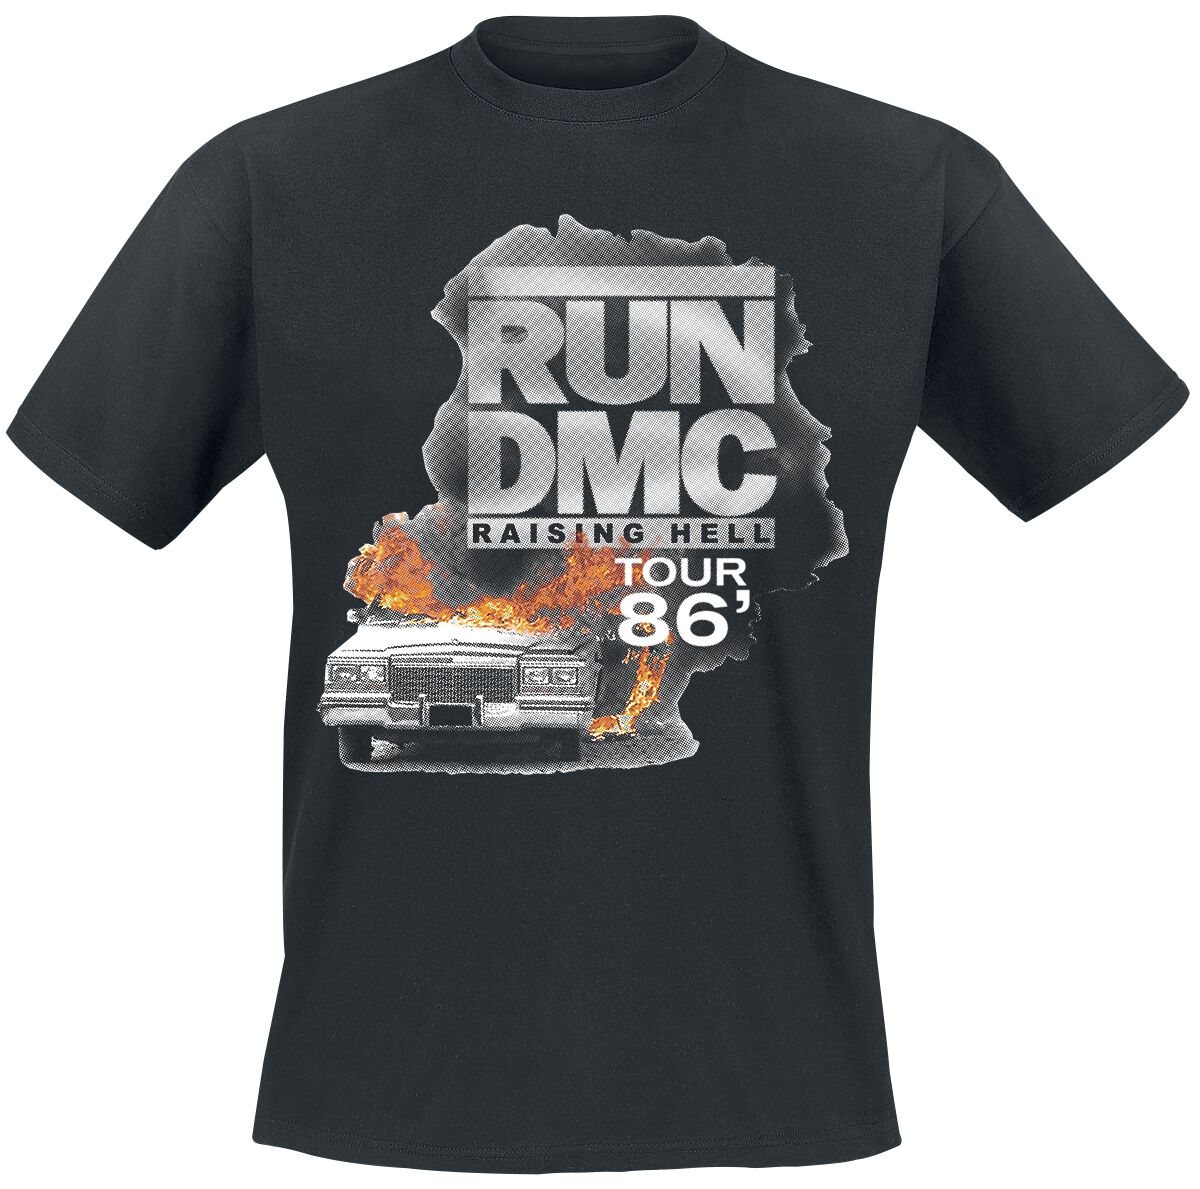 Run DMC T-Shirt - Burning Cadillac Tour 86 - S bis L - für Männer - Größe M - schwarz  - Lizenziertes Merchandise!